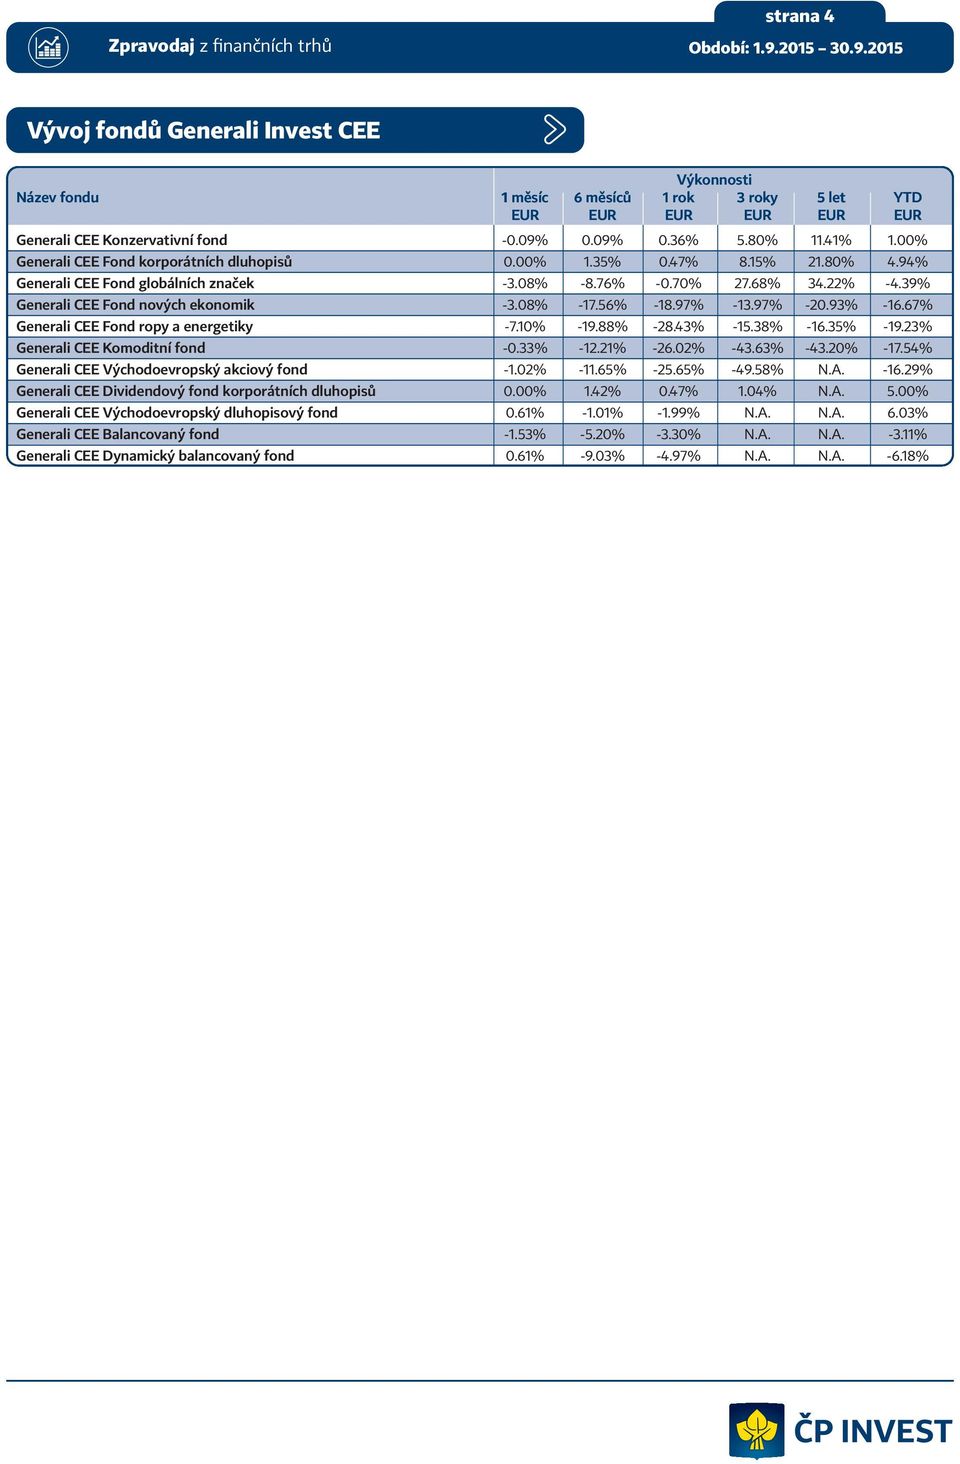 08% -17.56% -18.97% -13.97% -20.93% -16.67% Generali CEE Fond ropy a energetiky -7.10% -19.88% -28.43% -15.38% -16.35% -19.23% Generali CEE Komoditní fond -0.33% -12.21% -26.02% -43.63% -43.20% -17.